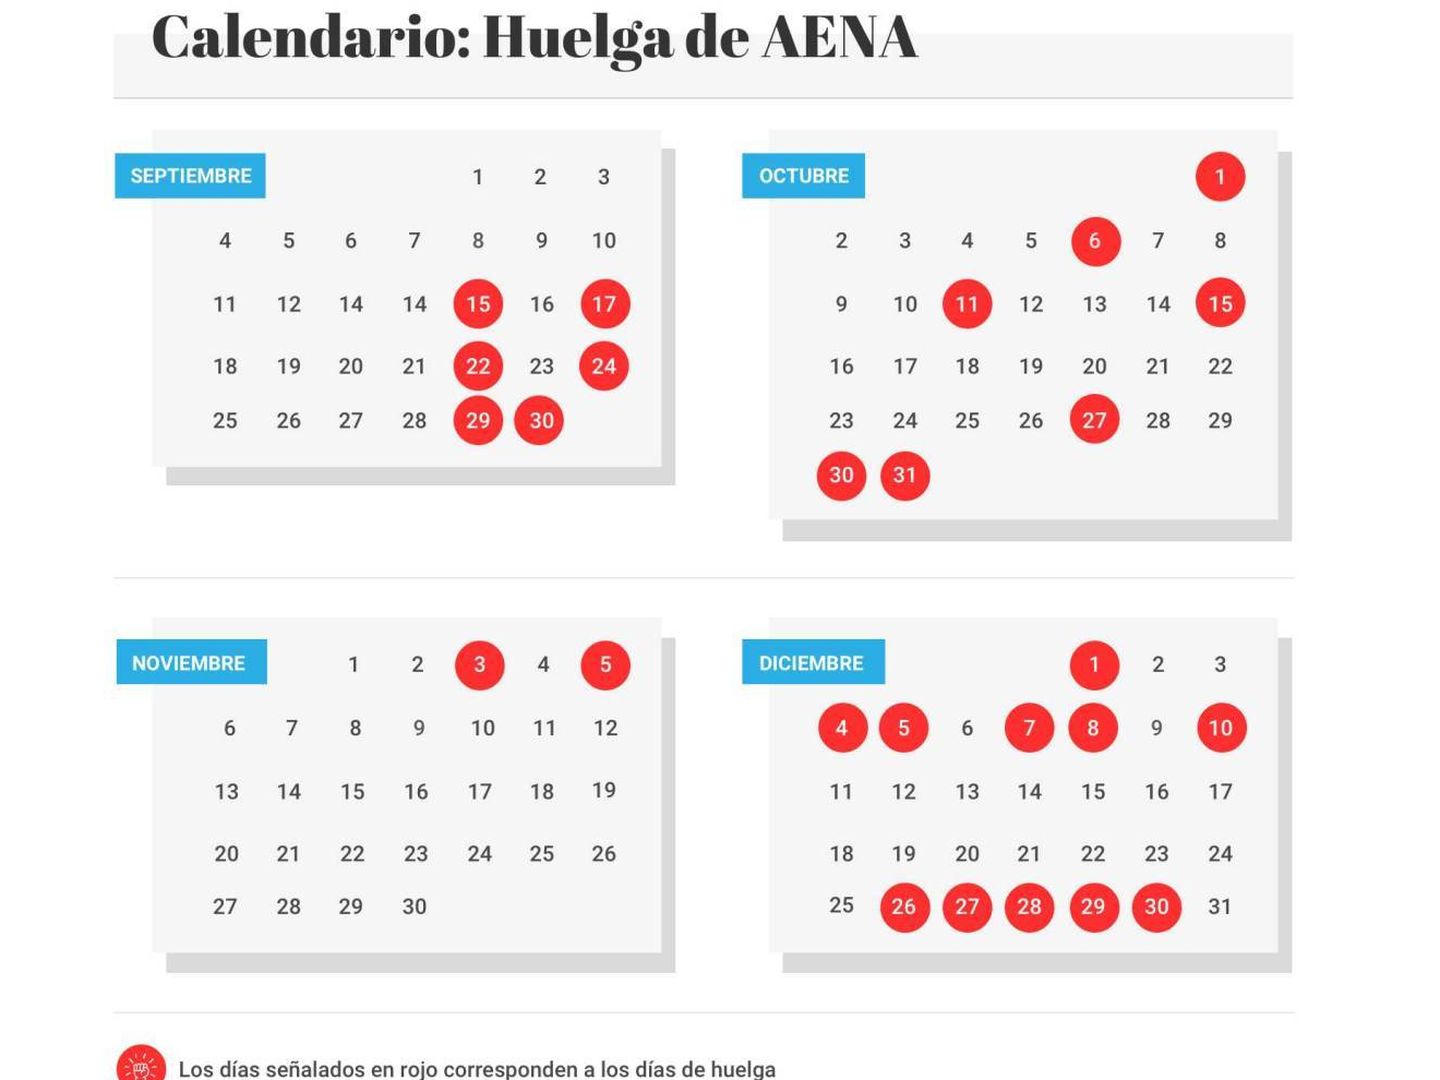 Calendario de huelga de Aena. (Fuente: El Confidencial)